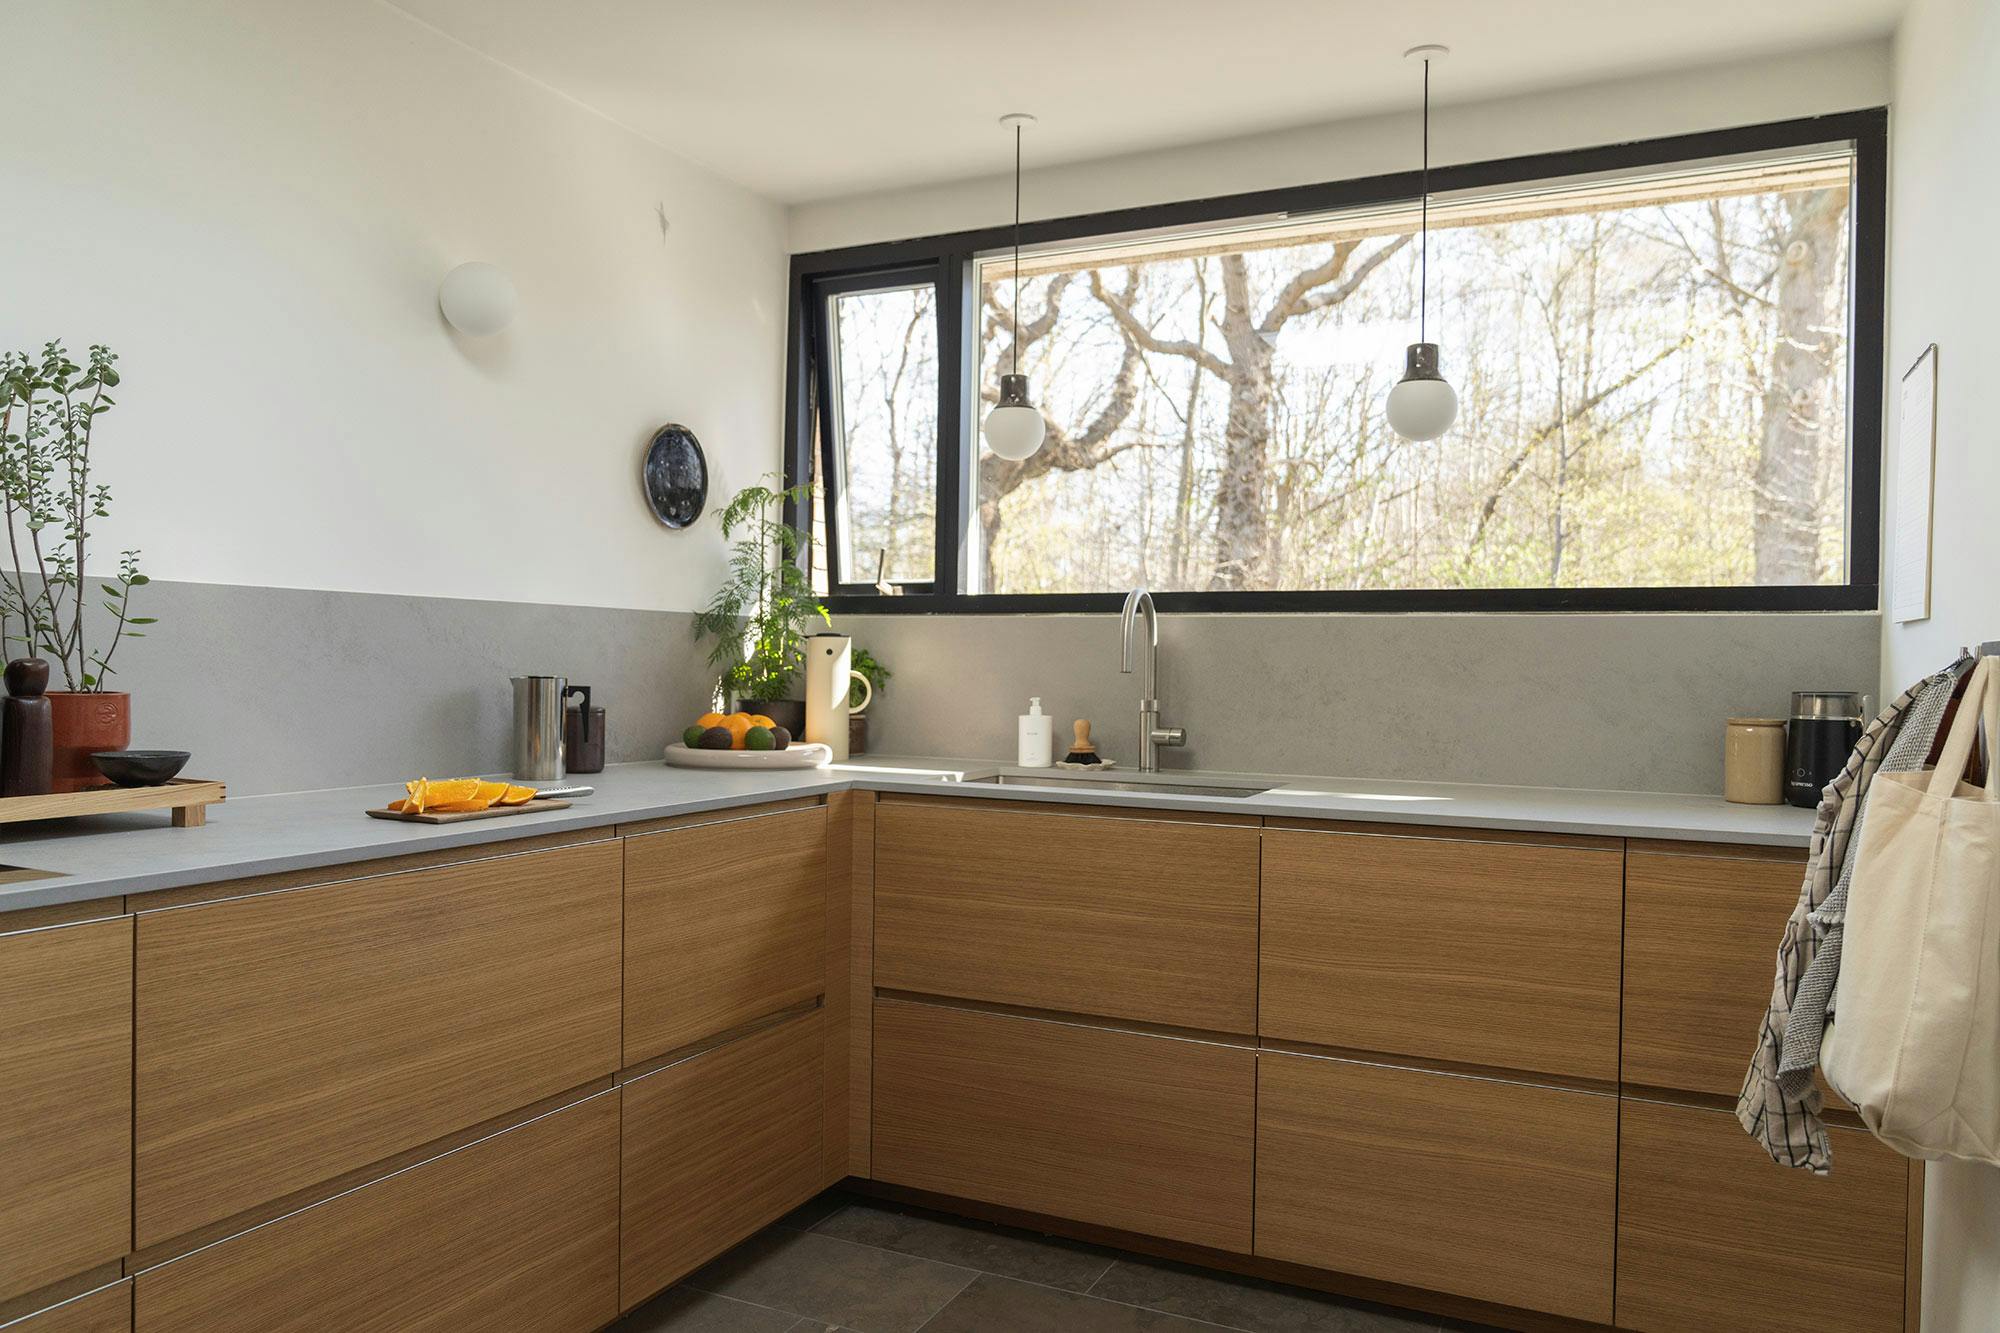 Numero immagine 44 della sezione corrente di Architect and interior designer Memmu Pitkänen chose the beautiful DKTN Helena for her kitchen di Cosentino Italia